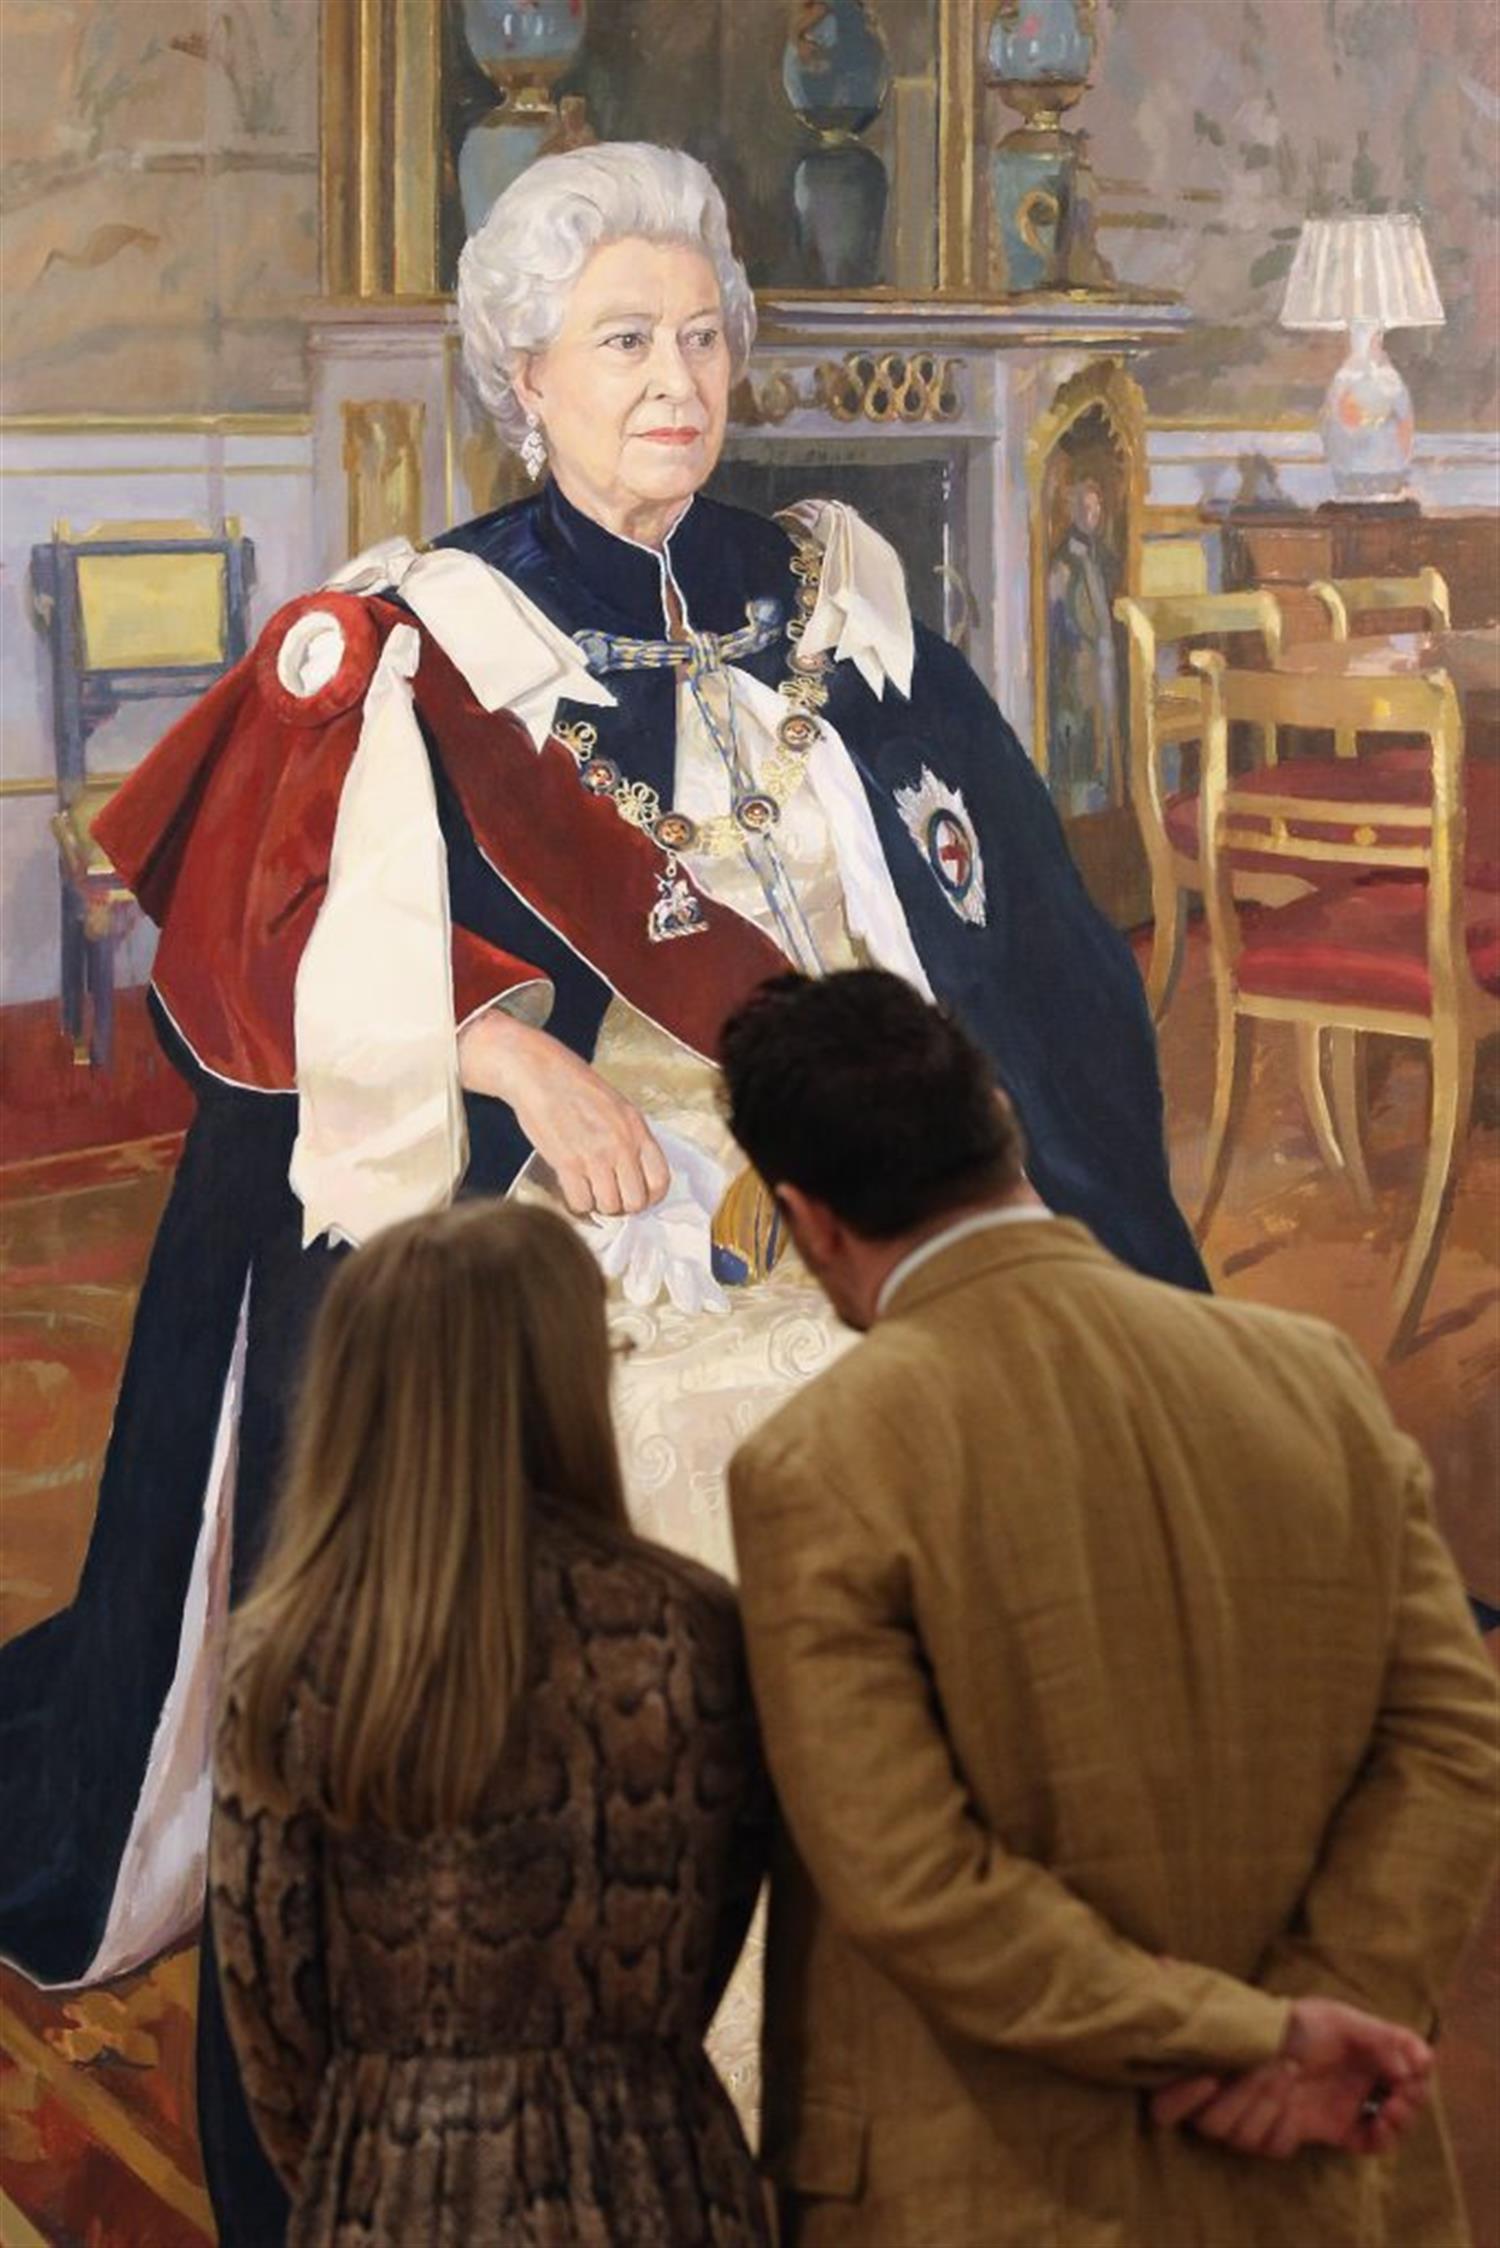 نقاشی ملکه الیزابت دوم در نمایشگاه انجمن سلطنتی نقاشان پرتره در گالری مال لندن